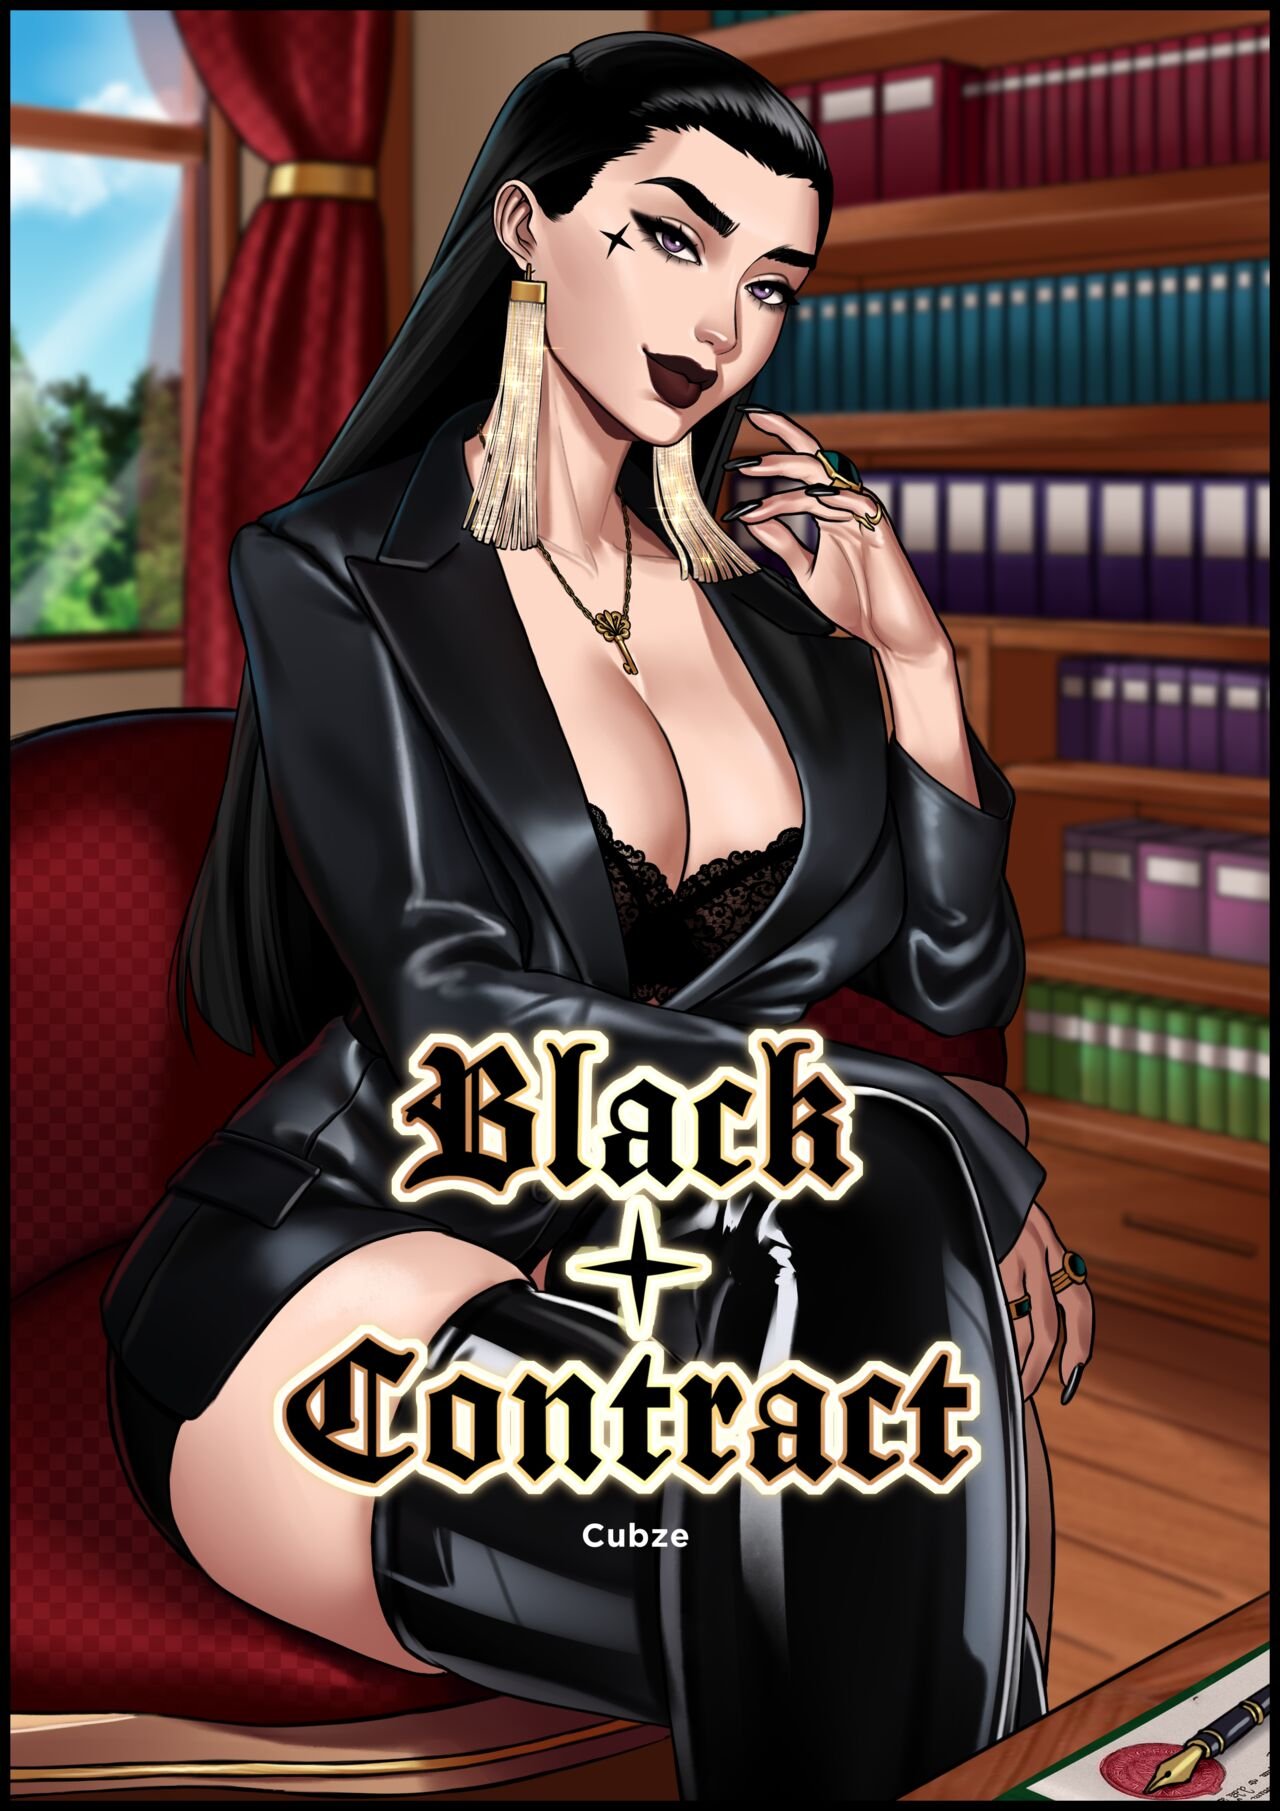 Otto Cubze - Black Contract porn comic